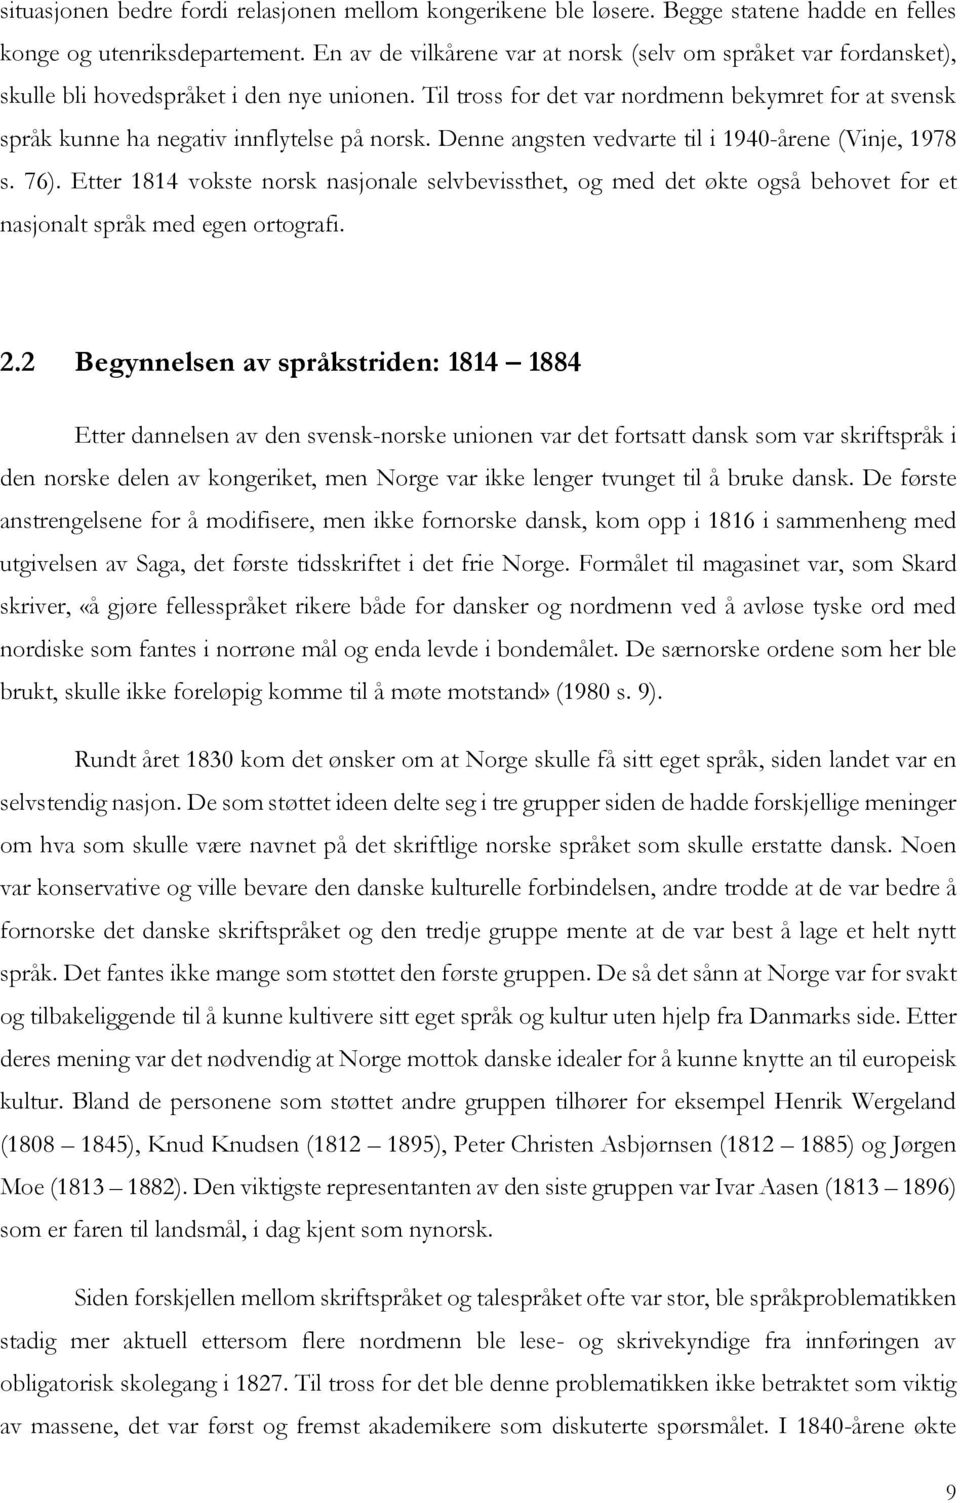 Til tross for det var nordmenn bekymret for at svensk språk kunne ha negativ innflytelse på norsk. Denne angsten vedvarte til i 1940-årene (Vinje, 1978 s. 76).